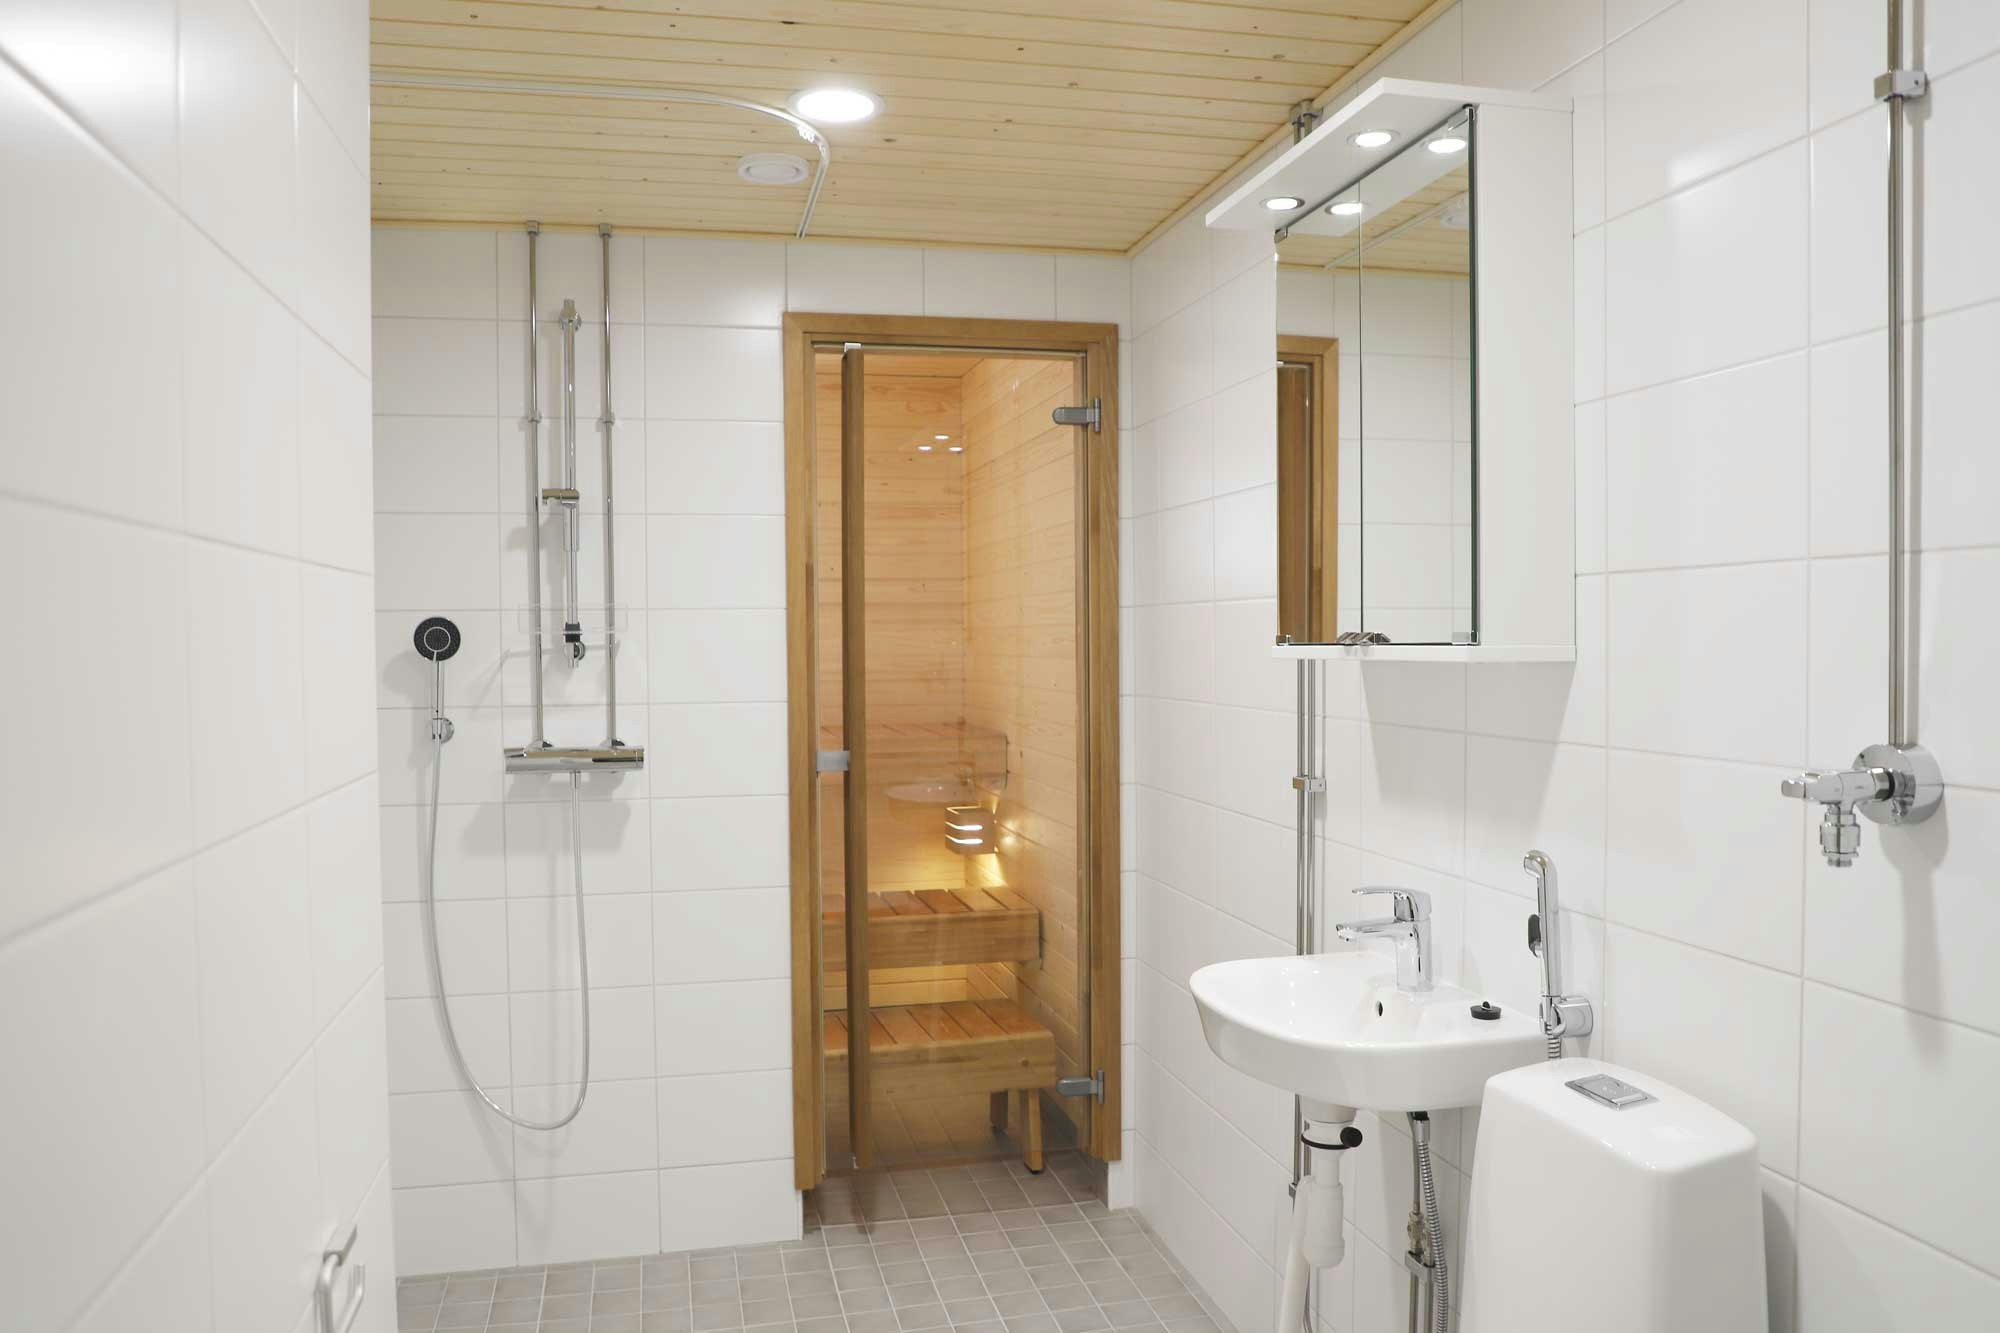 Kylpyhuoneiden ja saunojen pinnat on uusittu täysin.